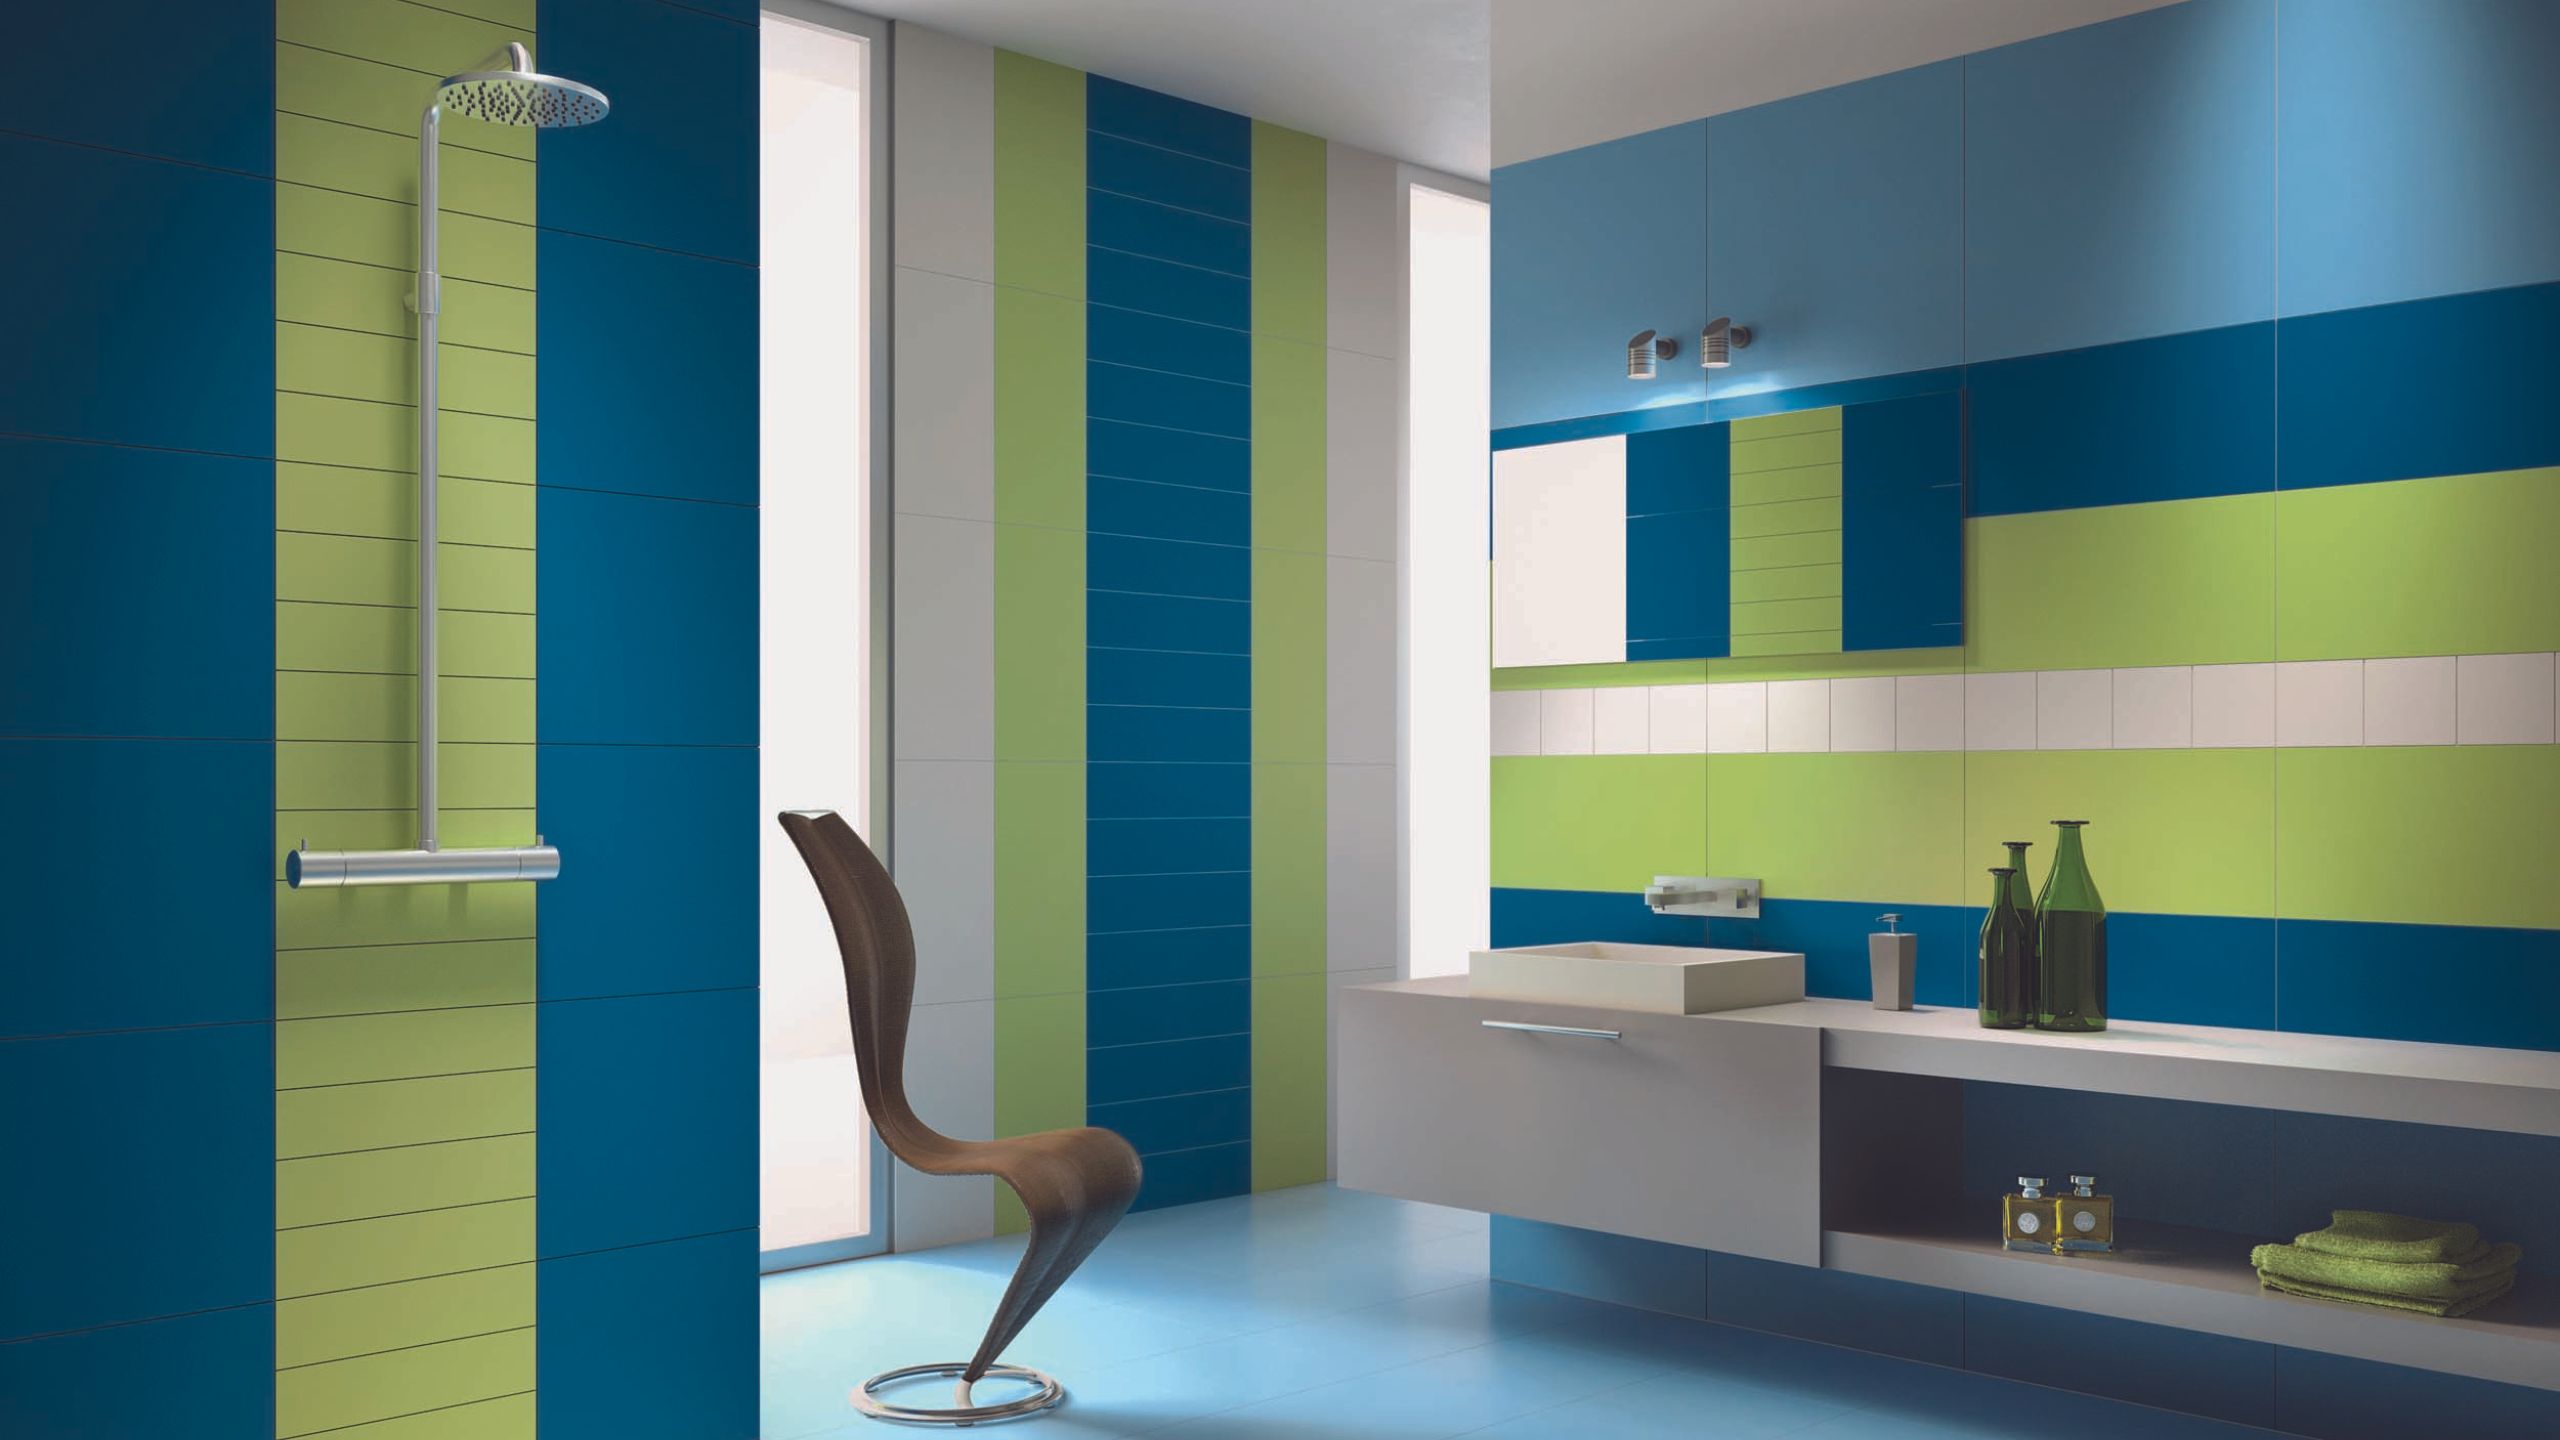 Синяя ванная (+40 фото) - идеи дизайна для ванной в синем цвете | Дизайн и интерьер ванной комнаты